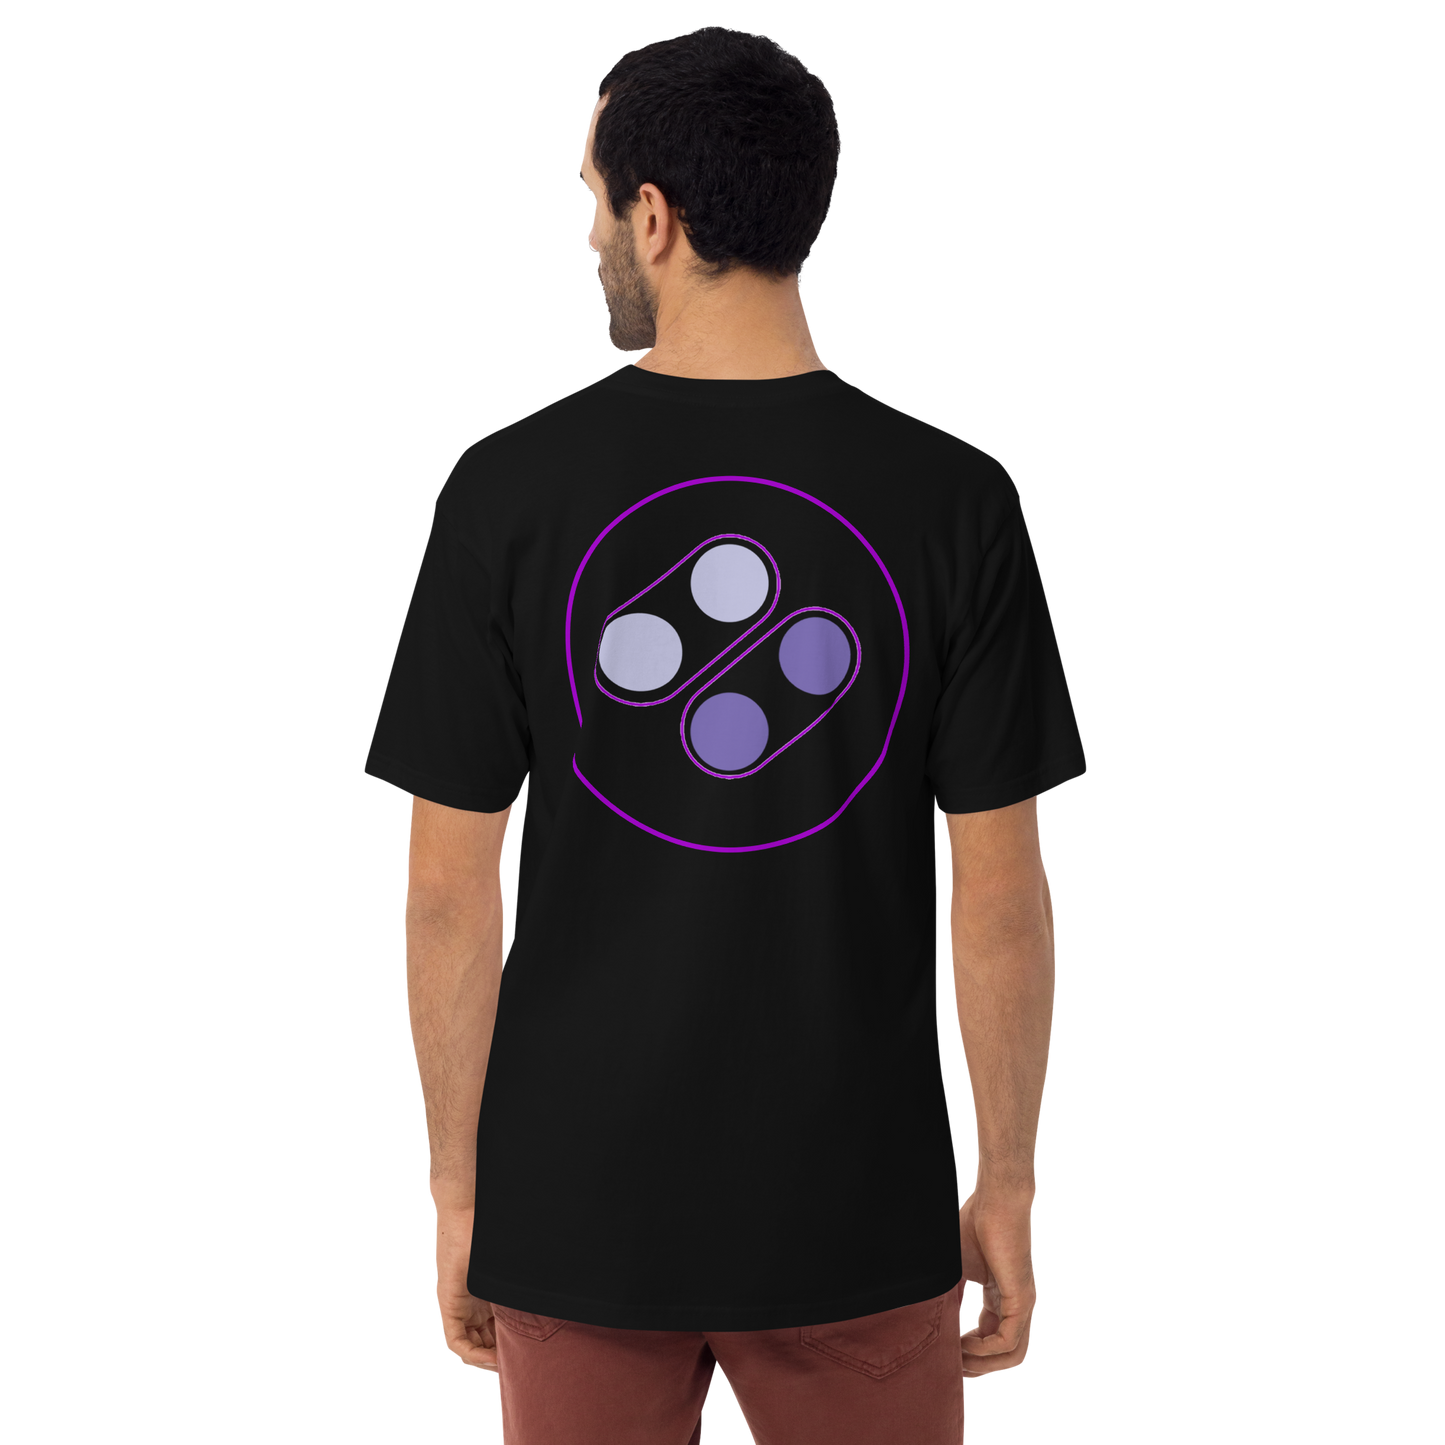 YSUG Mode 7 - Shirt